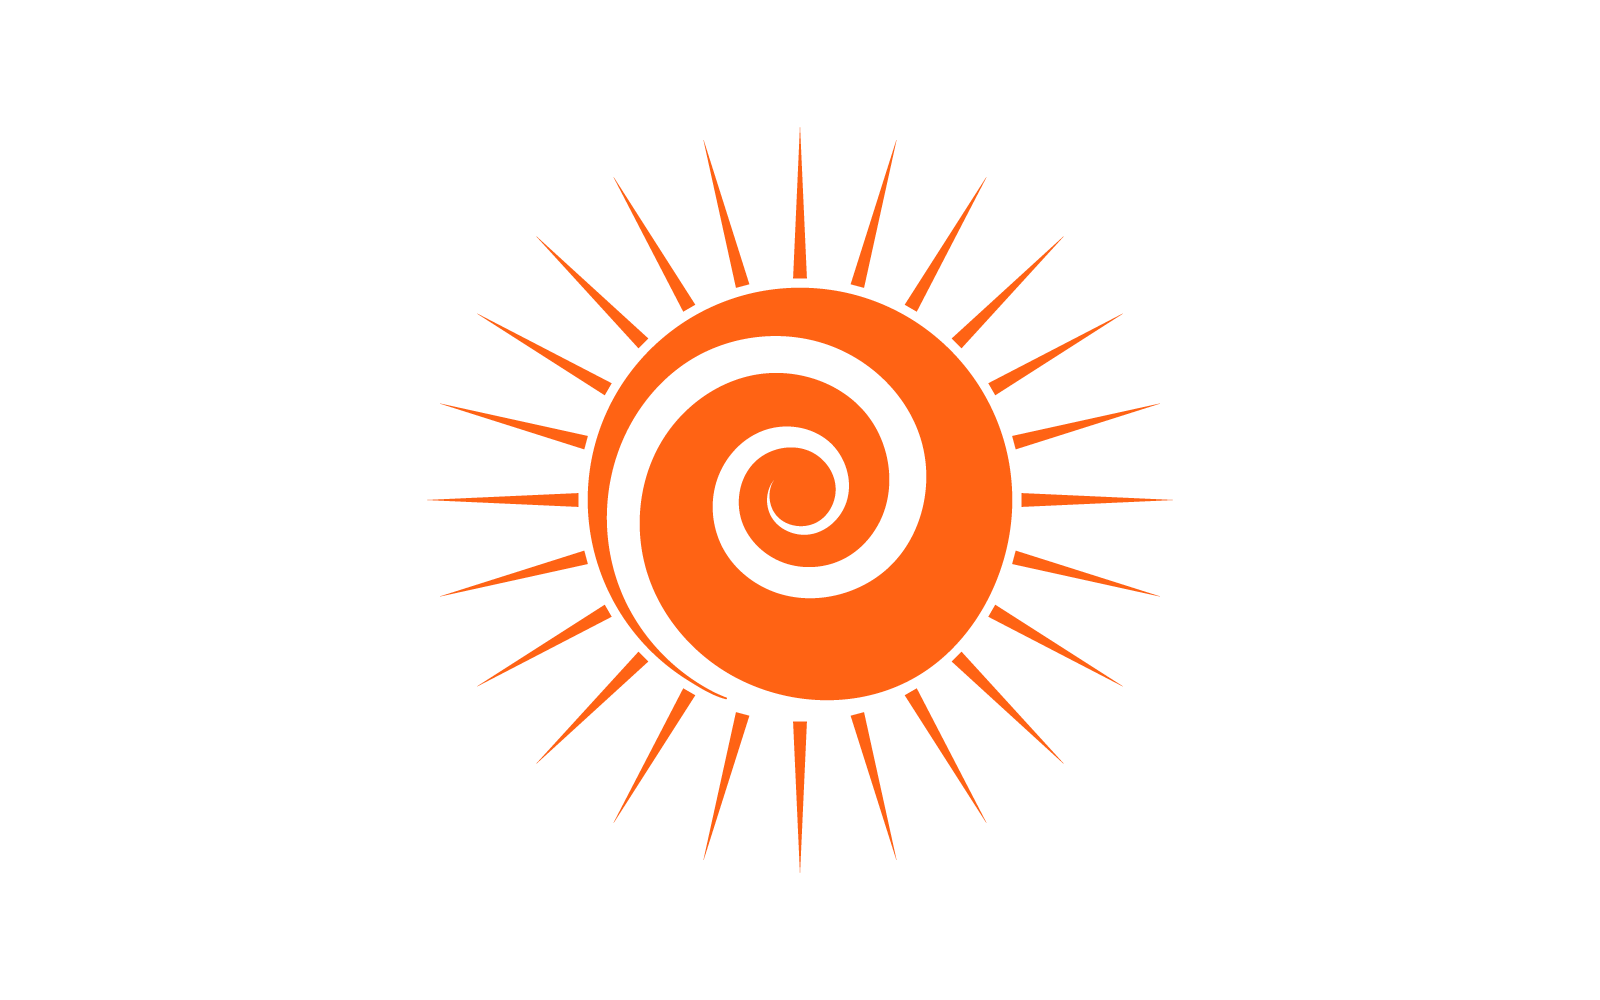 Flache Designvorlage für das Logo der Sonnenillustration, Vektor